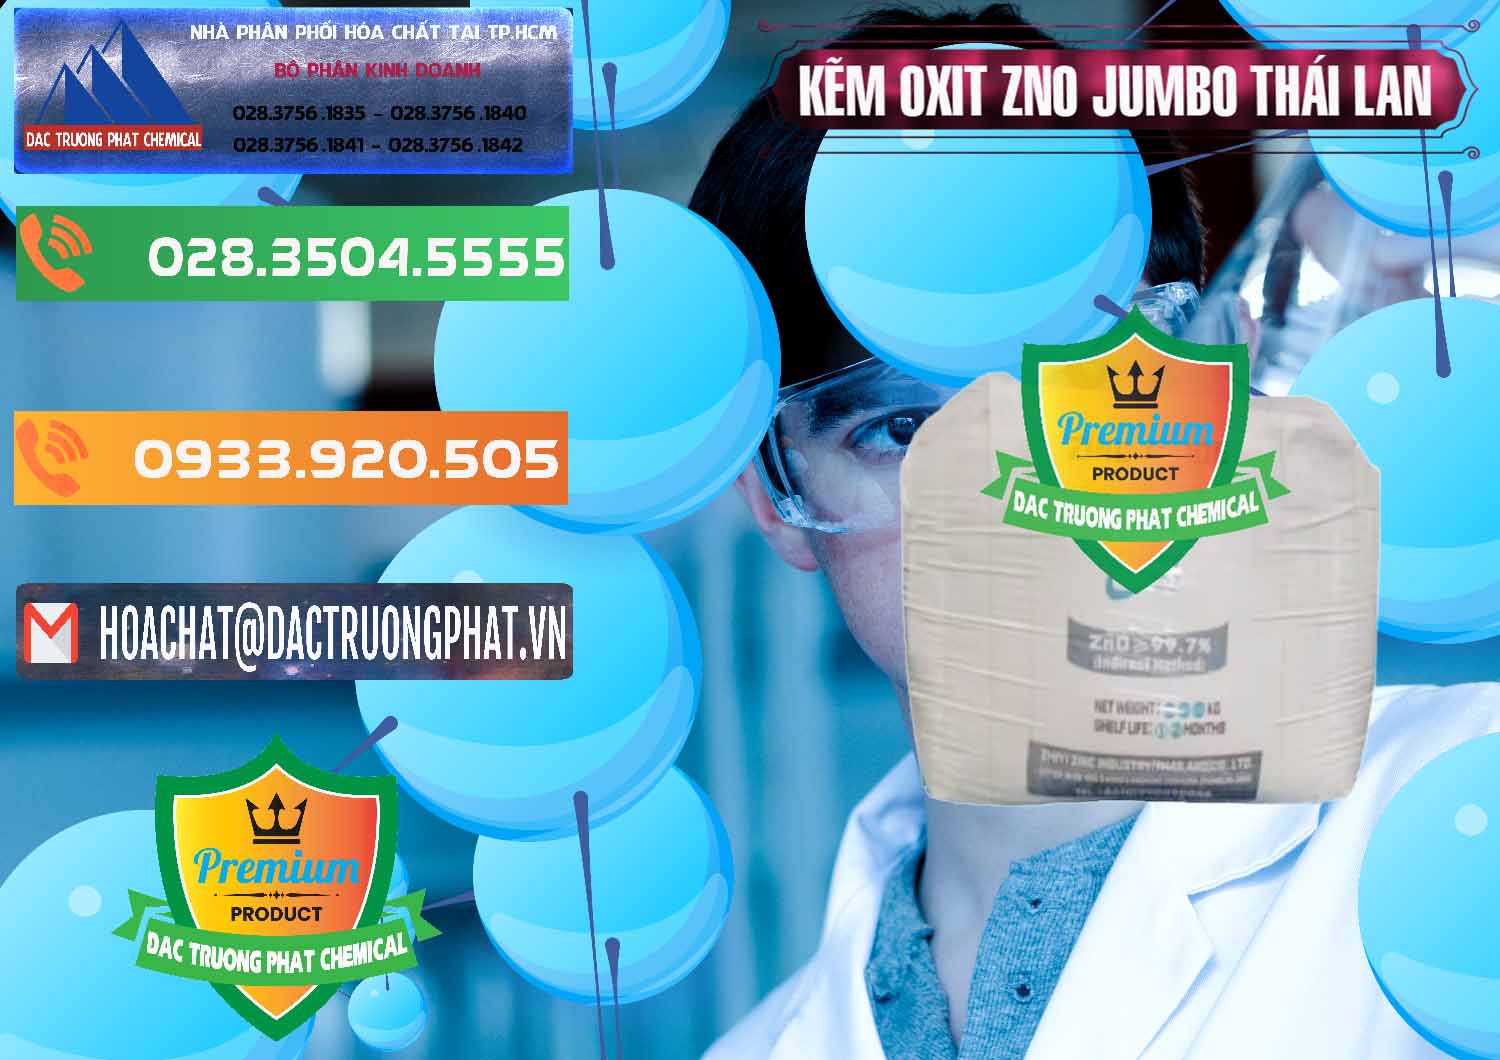 Cty bán _ phân phối Zinc Oxide - Bột Kẽm Oxit ZNO Jumbo Bành Thái Lan Thailand - 0370 - Chuyên bán _ cung cấp hóa chất tại TP.HCM - hoachatxulynuoc.com.vn